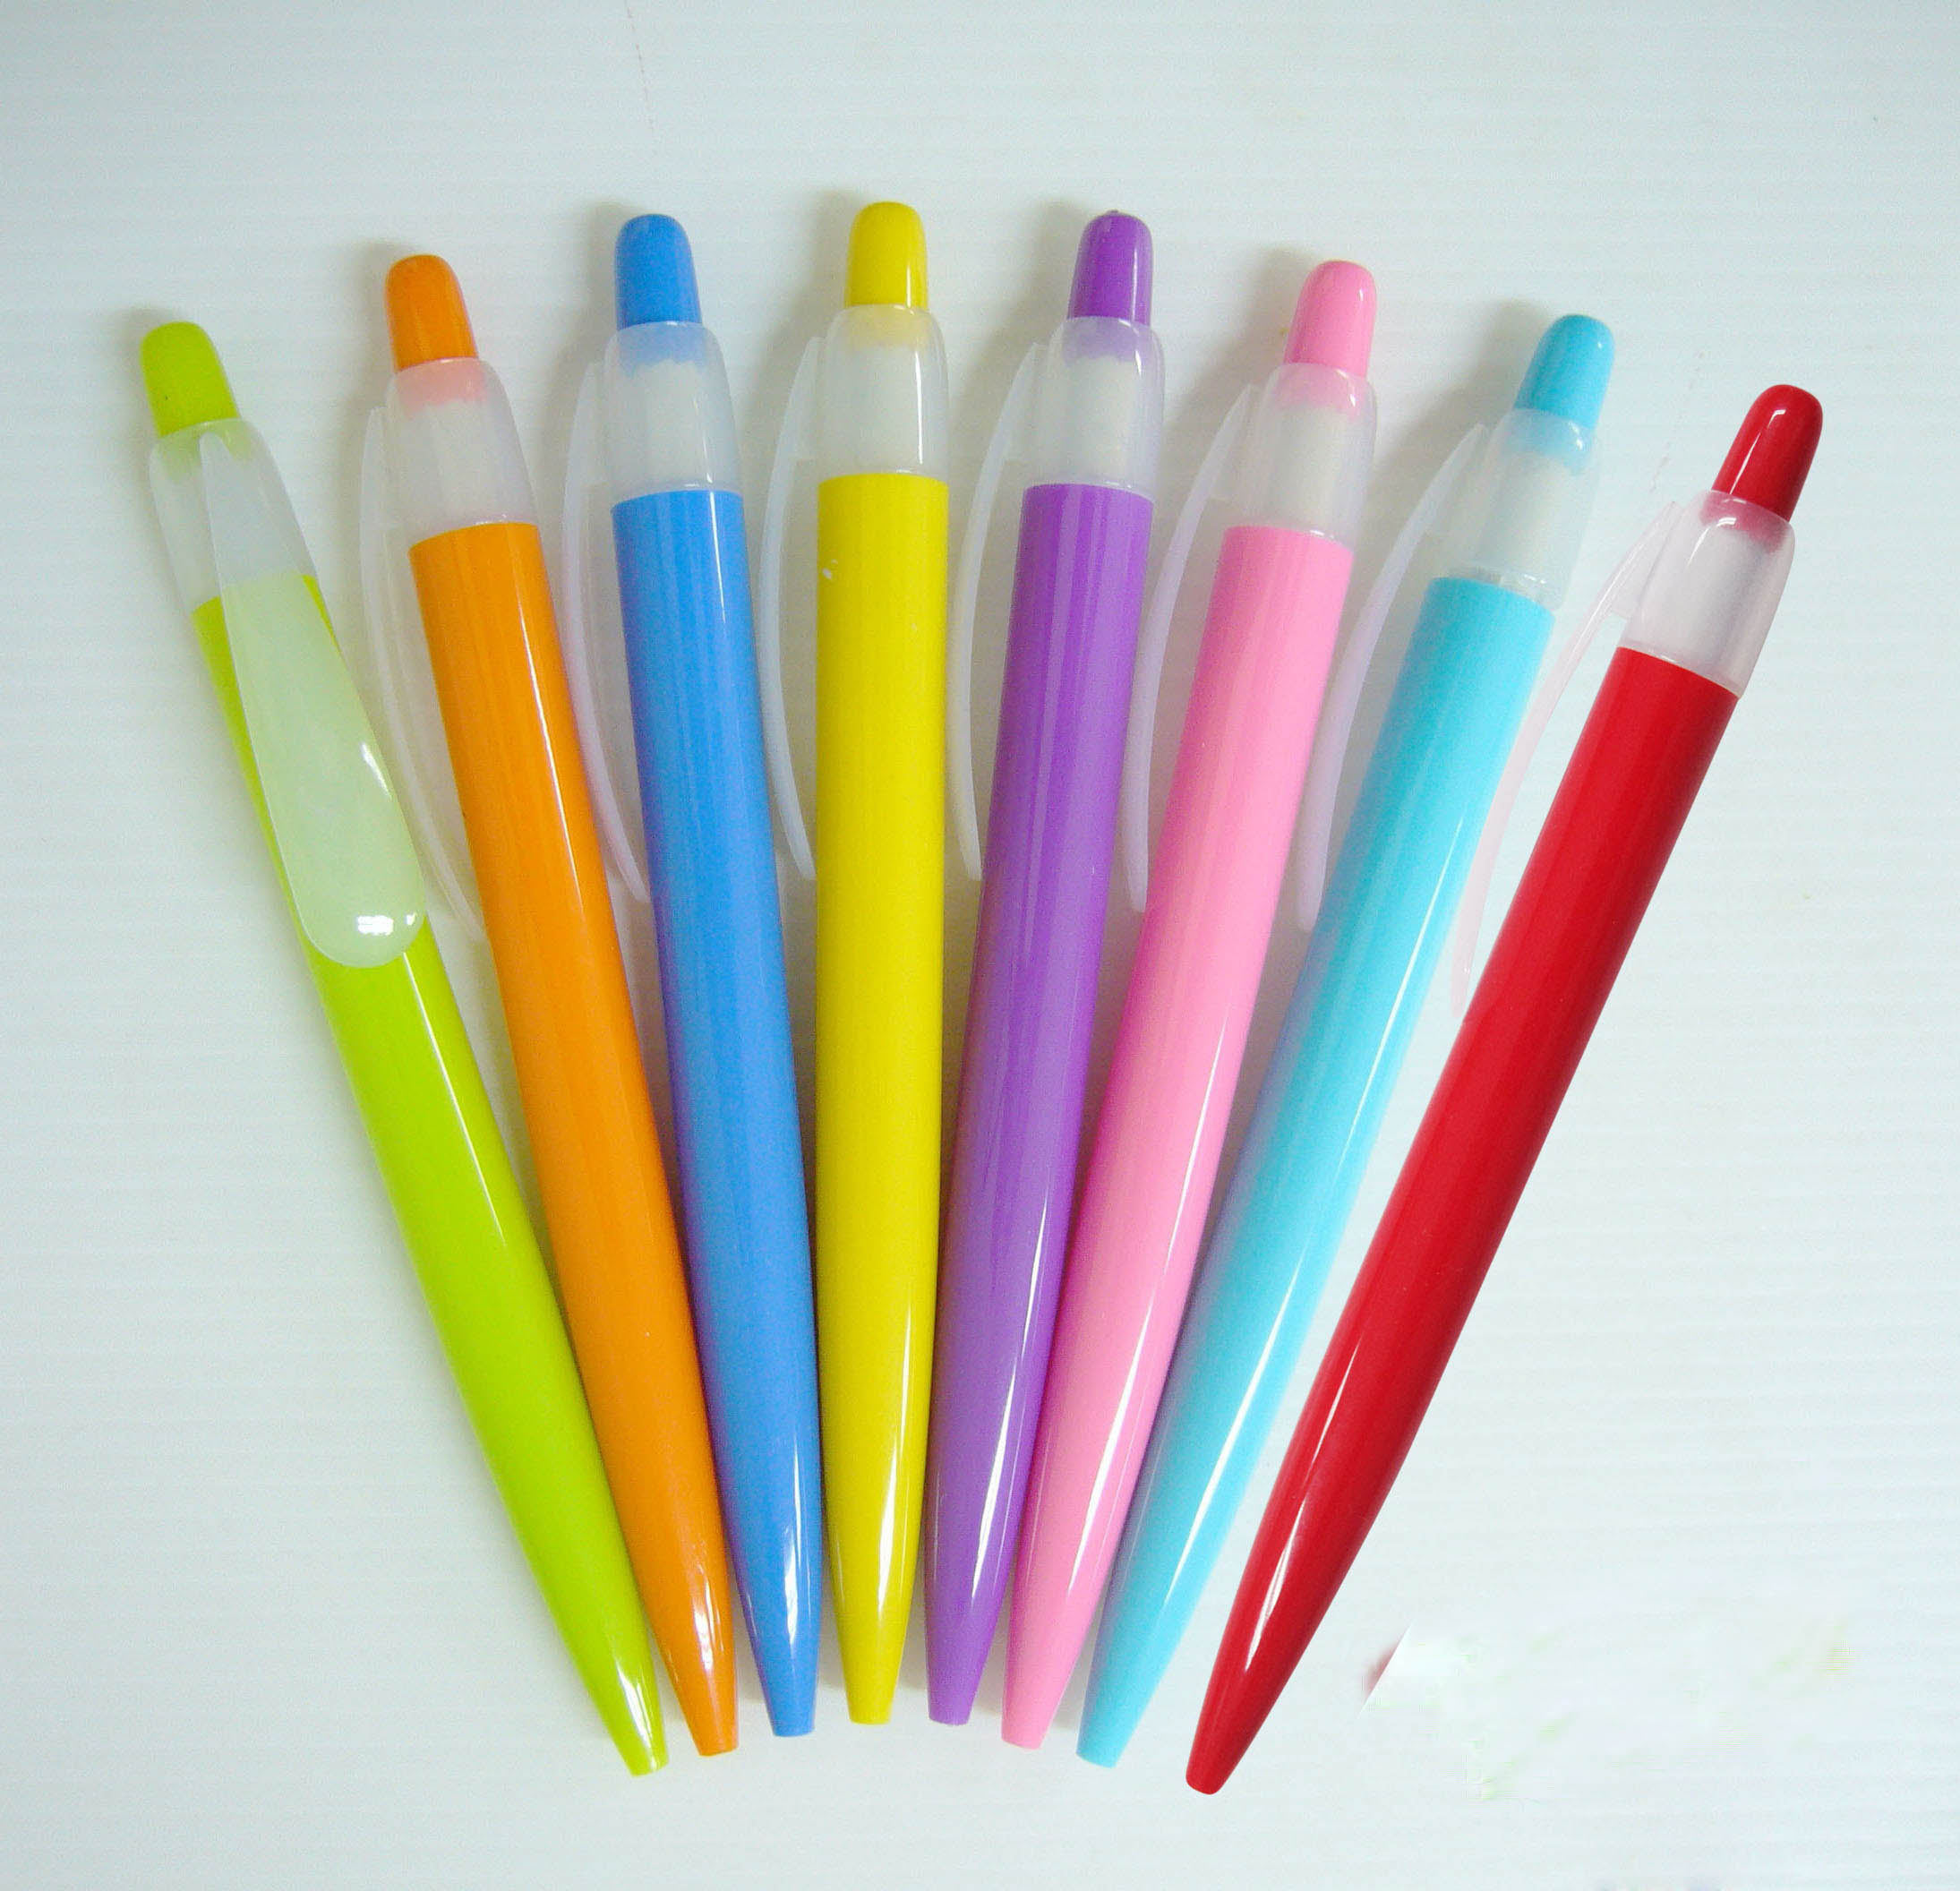 ปากกาพลาสติกราคาถูก สกรีนโลโก้ฟรี ราคาไม่เกิน 7 บาท ผลิต-จำหน่าย รูปที่ 1